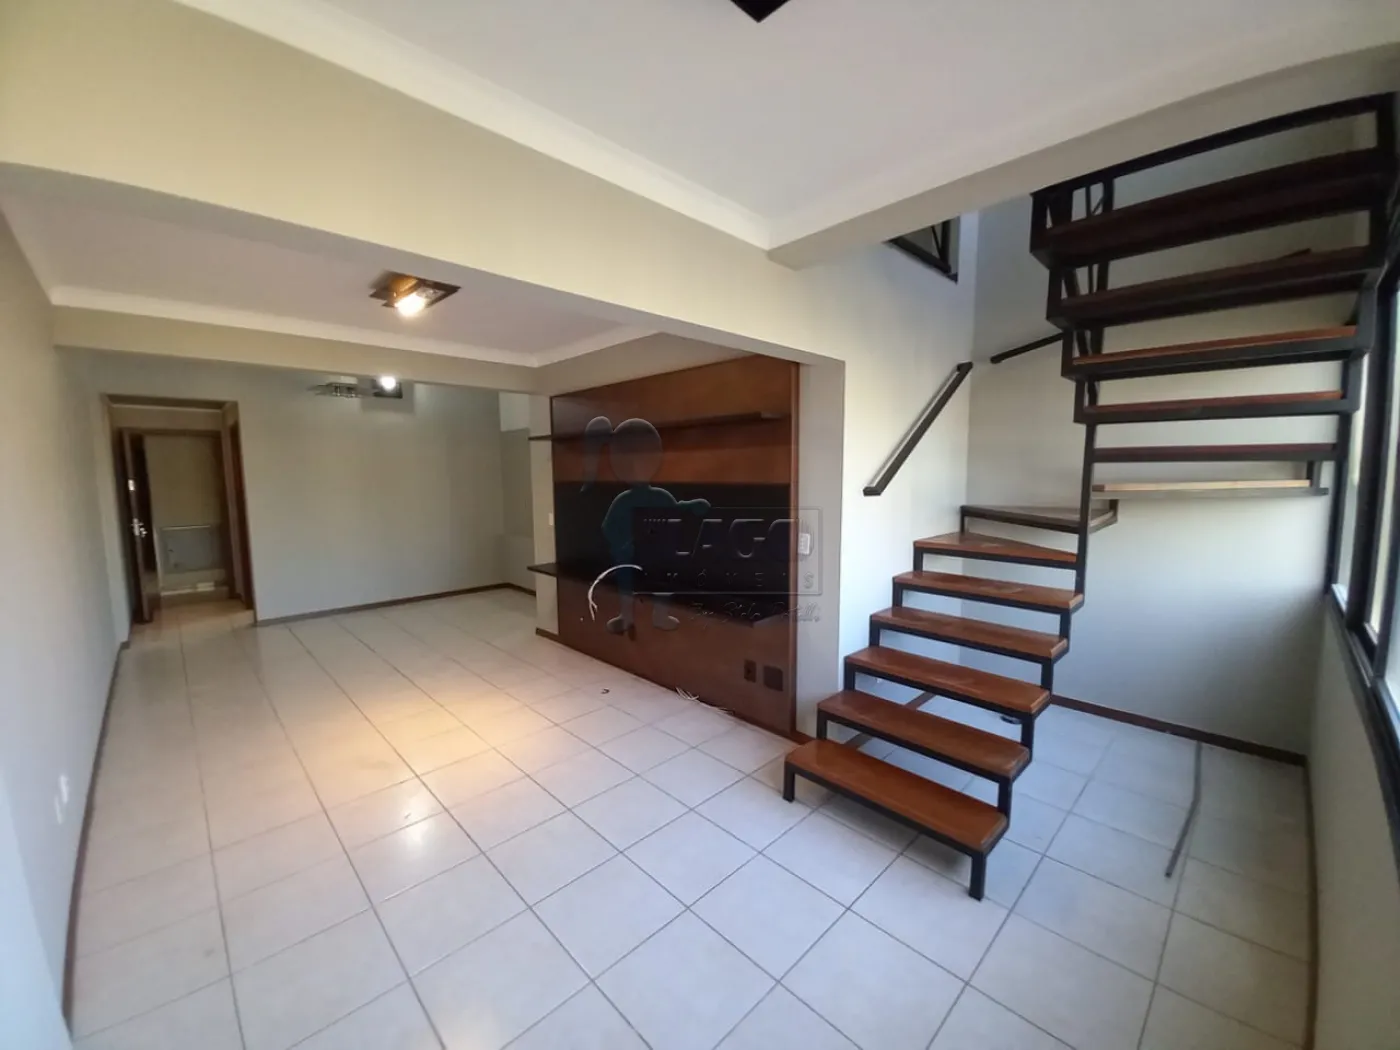 Alugar Apartamentos / Duplex em Ribeirão Preto R$ 3.500,00 - Foto 4